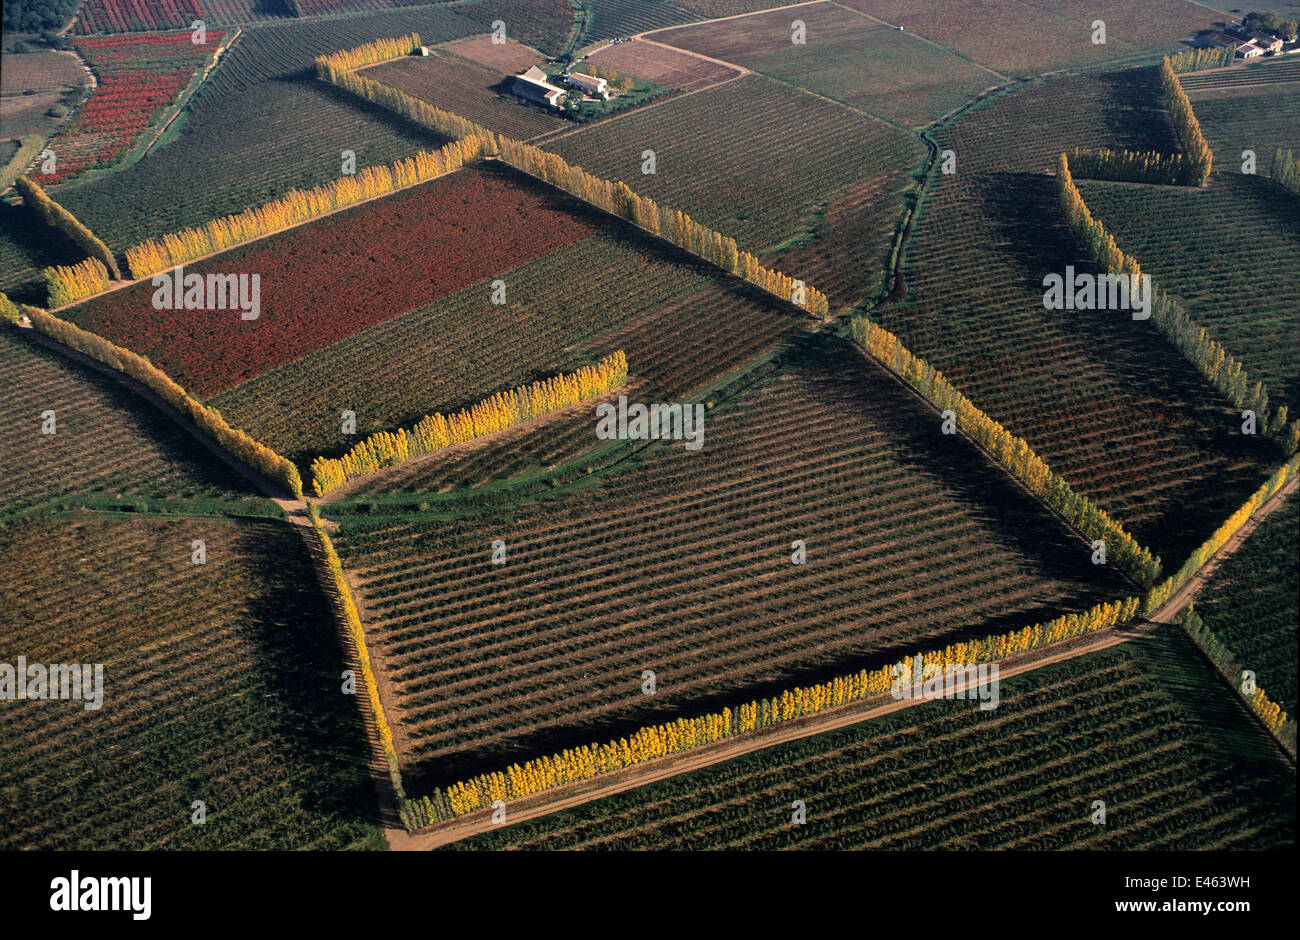 Vue aérienne de vignobles et d'arbres fruitiers bordé de peupliers italien, a présenté à la Camargue au cours du xixe siècle et planté pour la protection contre le vent, près d'Arles, Camargue, sud de la France. L'automne Banque D'Images